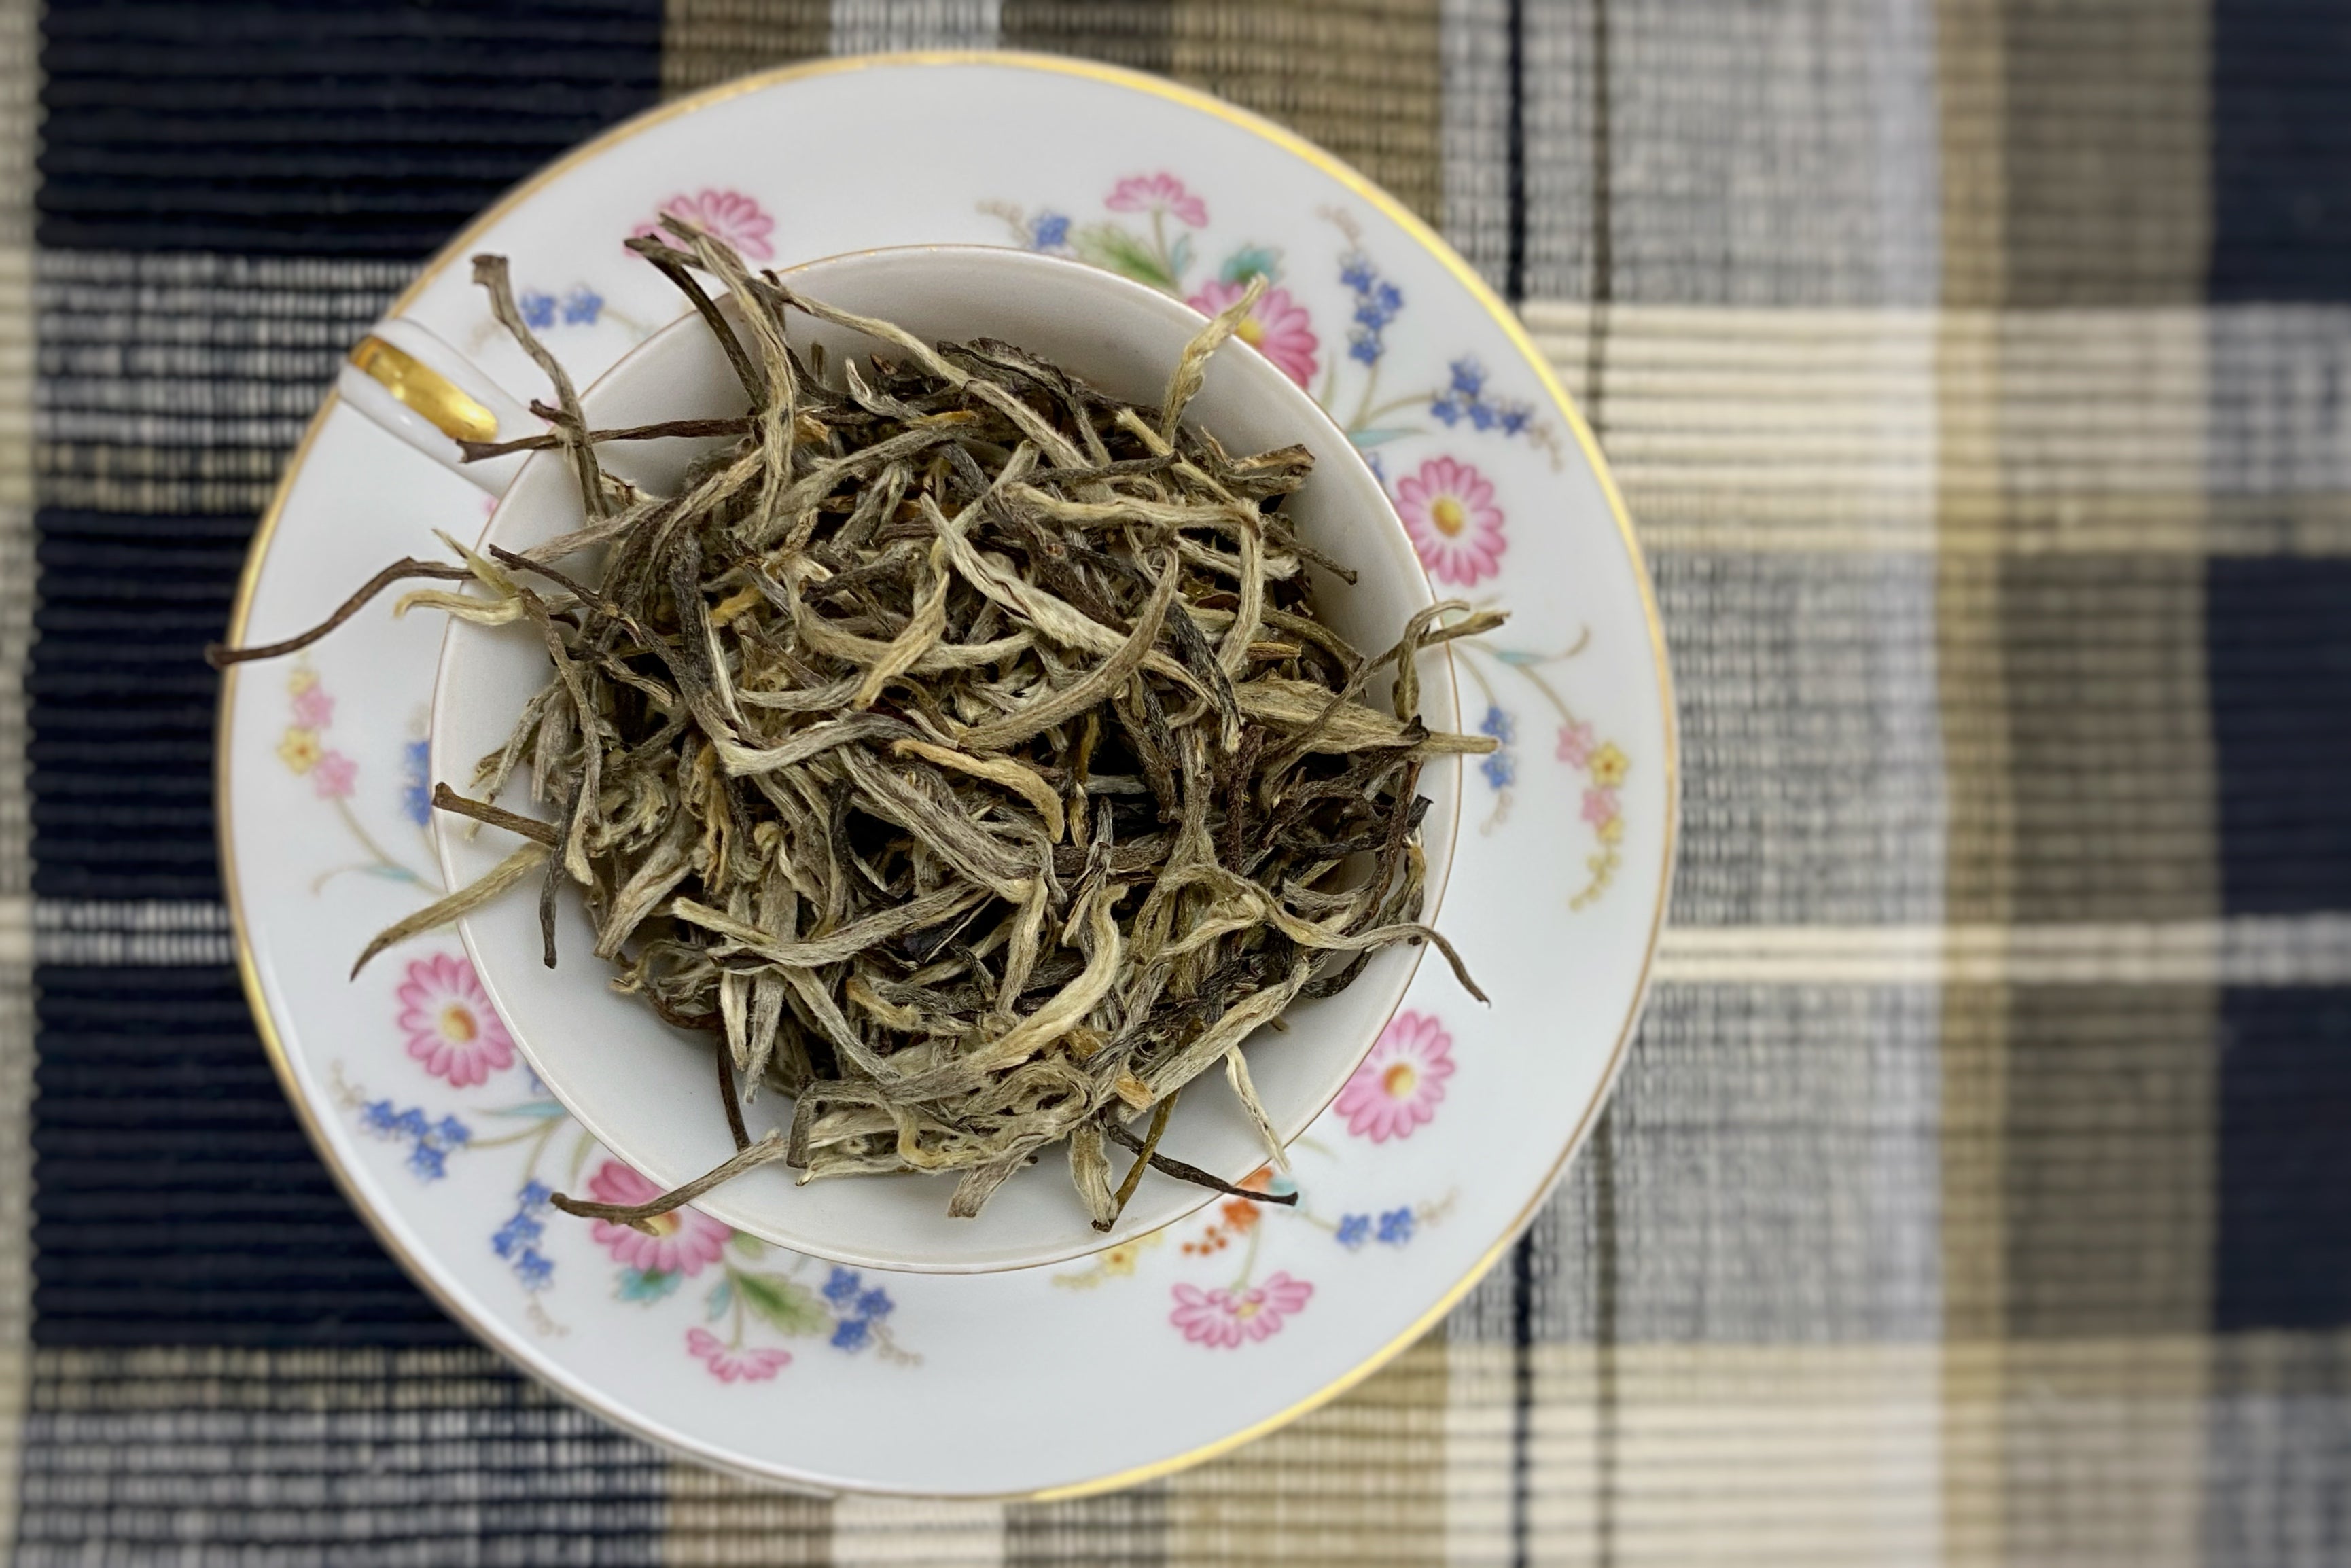 Yeti Whoop Oolong - Loose Leaf Tea from Nepal